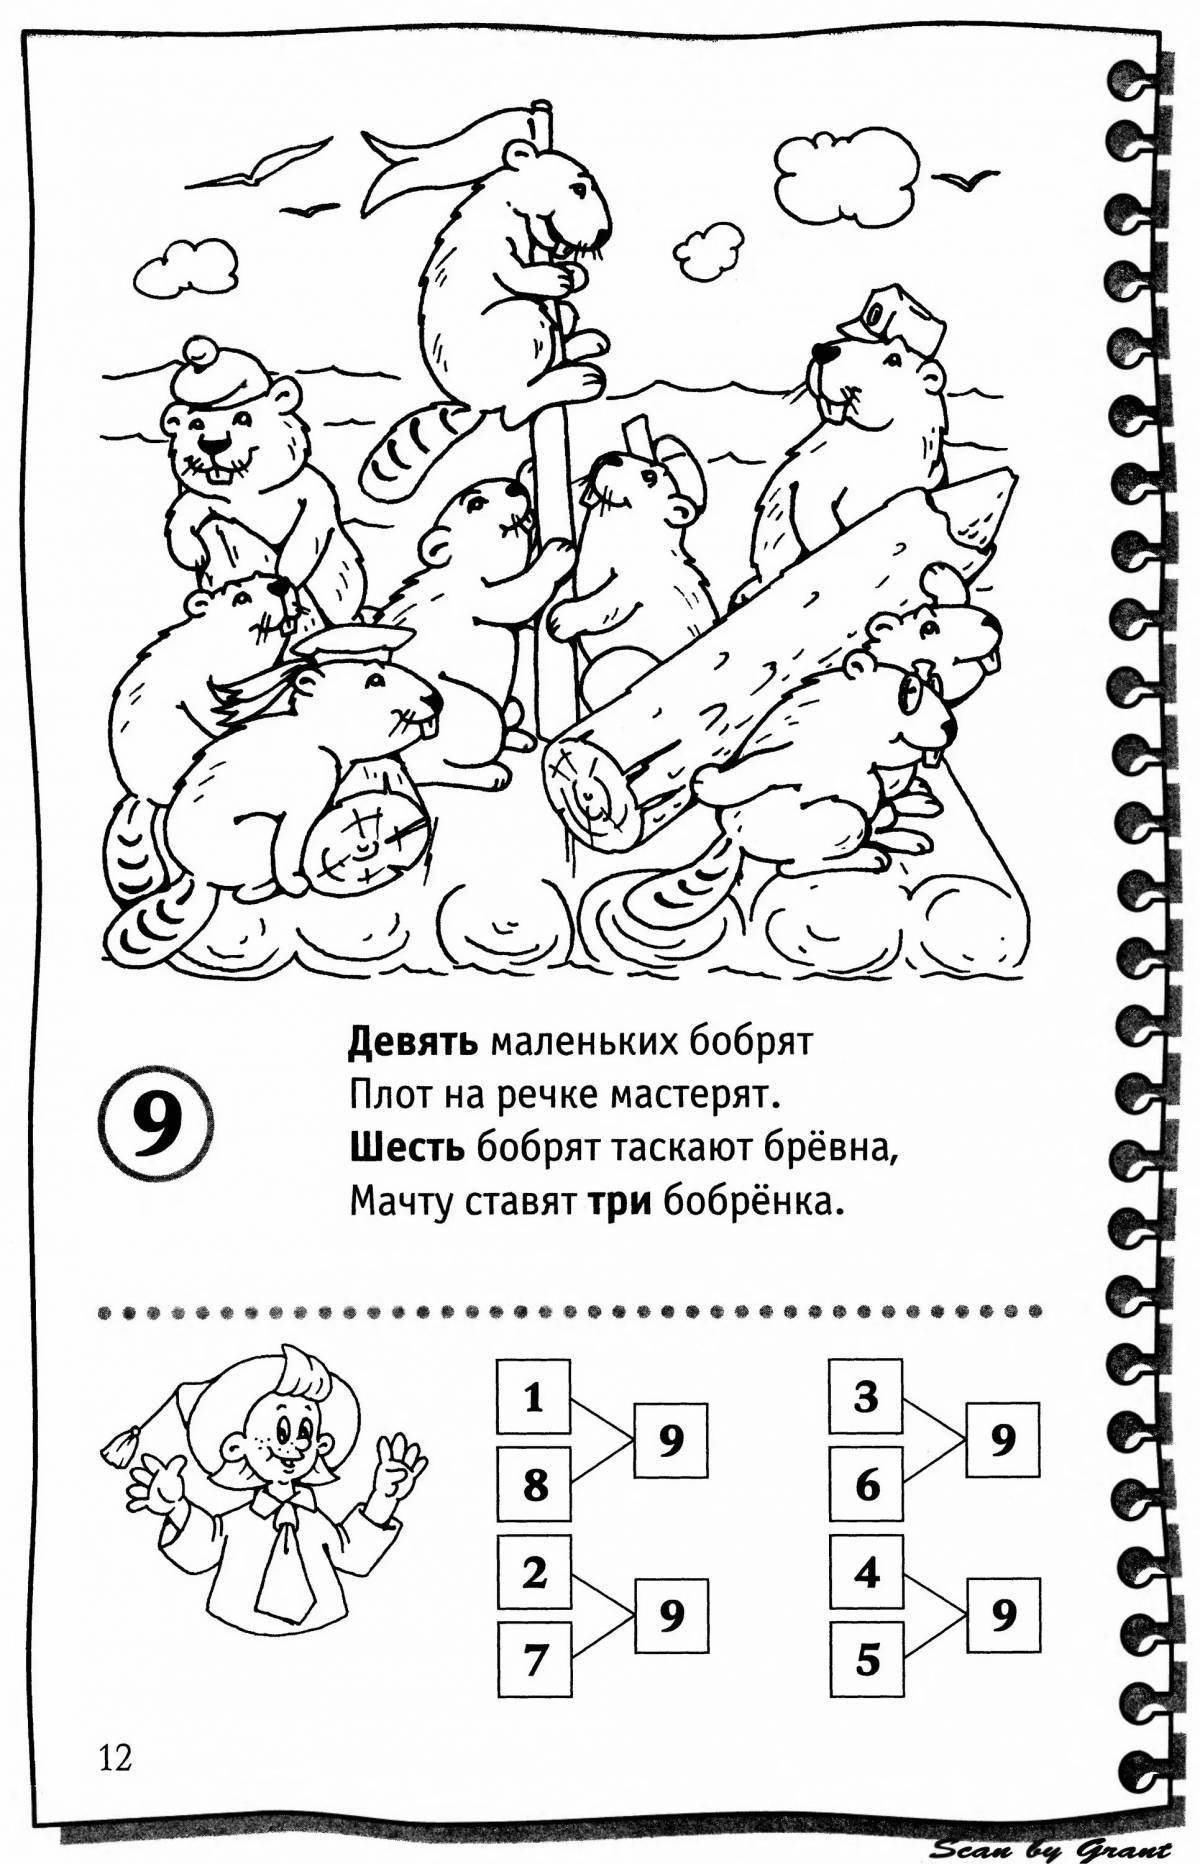 Fun Arrangement #5 for Preschoolers